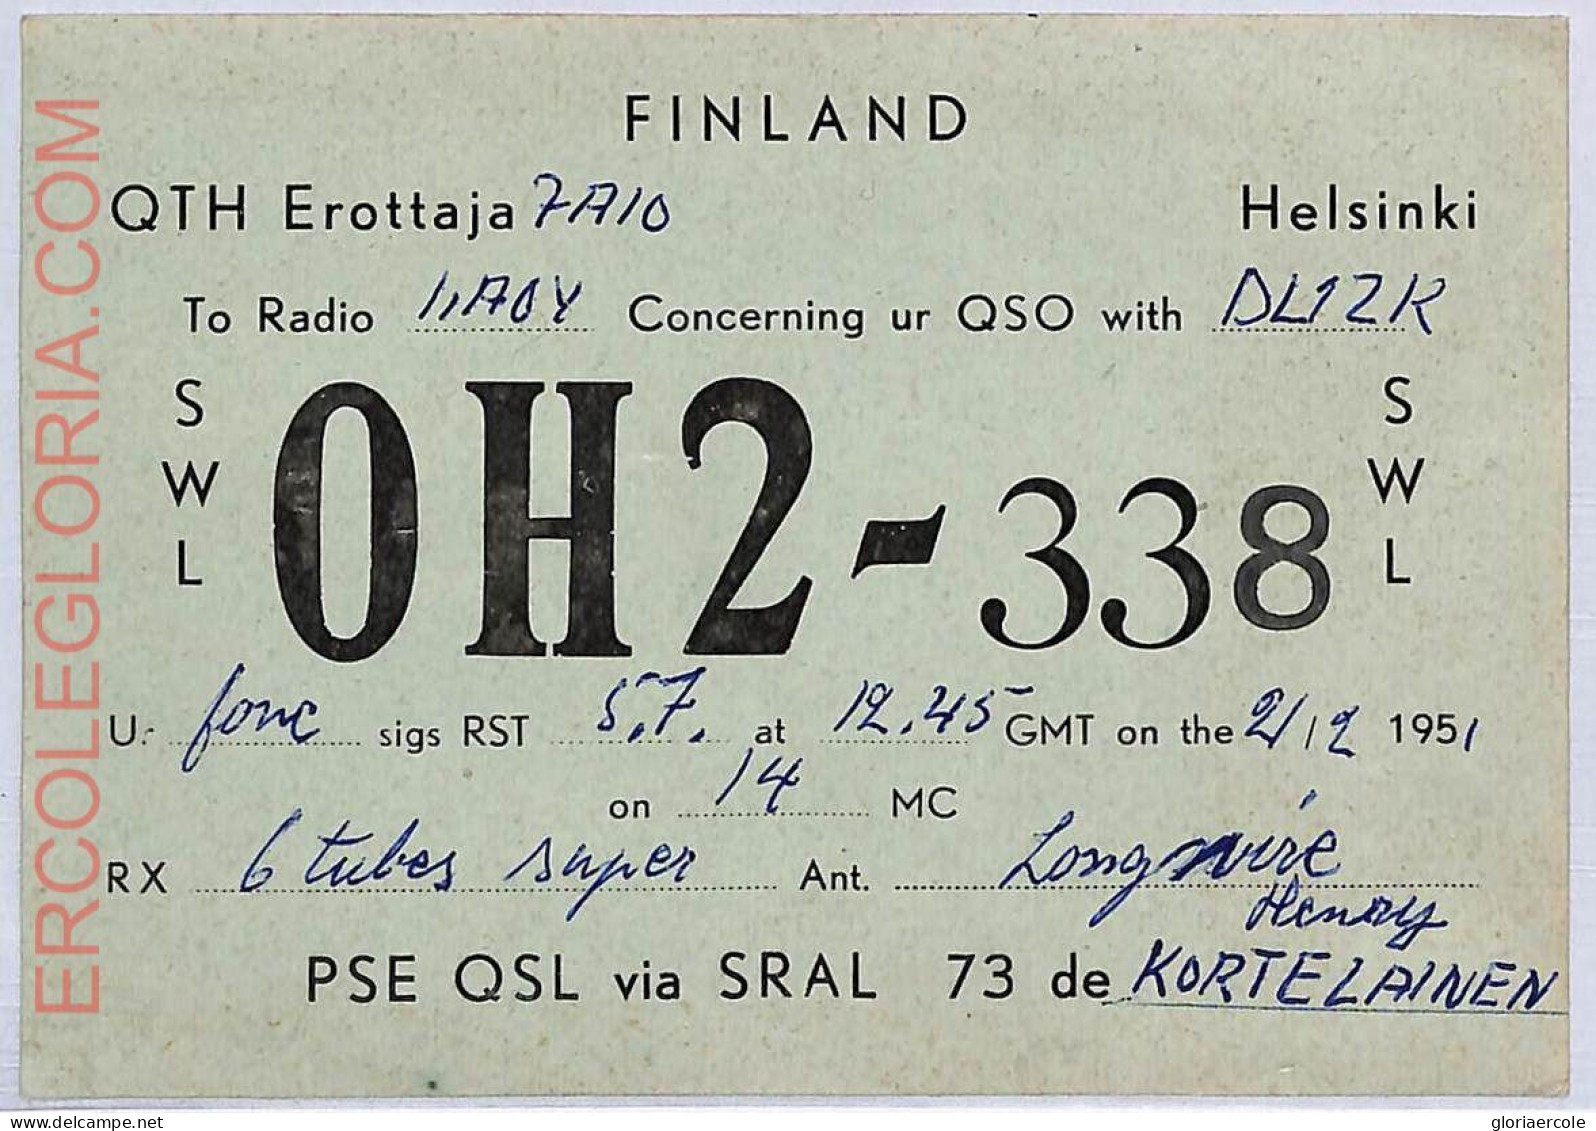 Ad9041 - FINLAND - RADIO FREQUENCY CARD   - Helsinki -  1951 - Radio